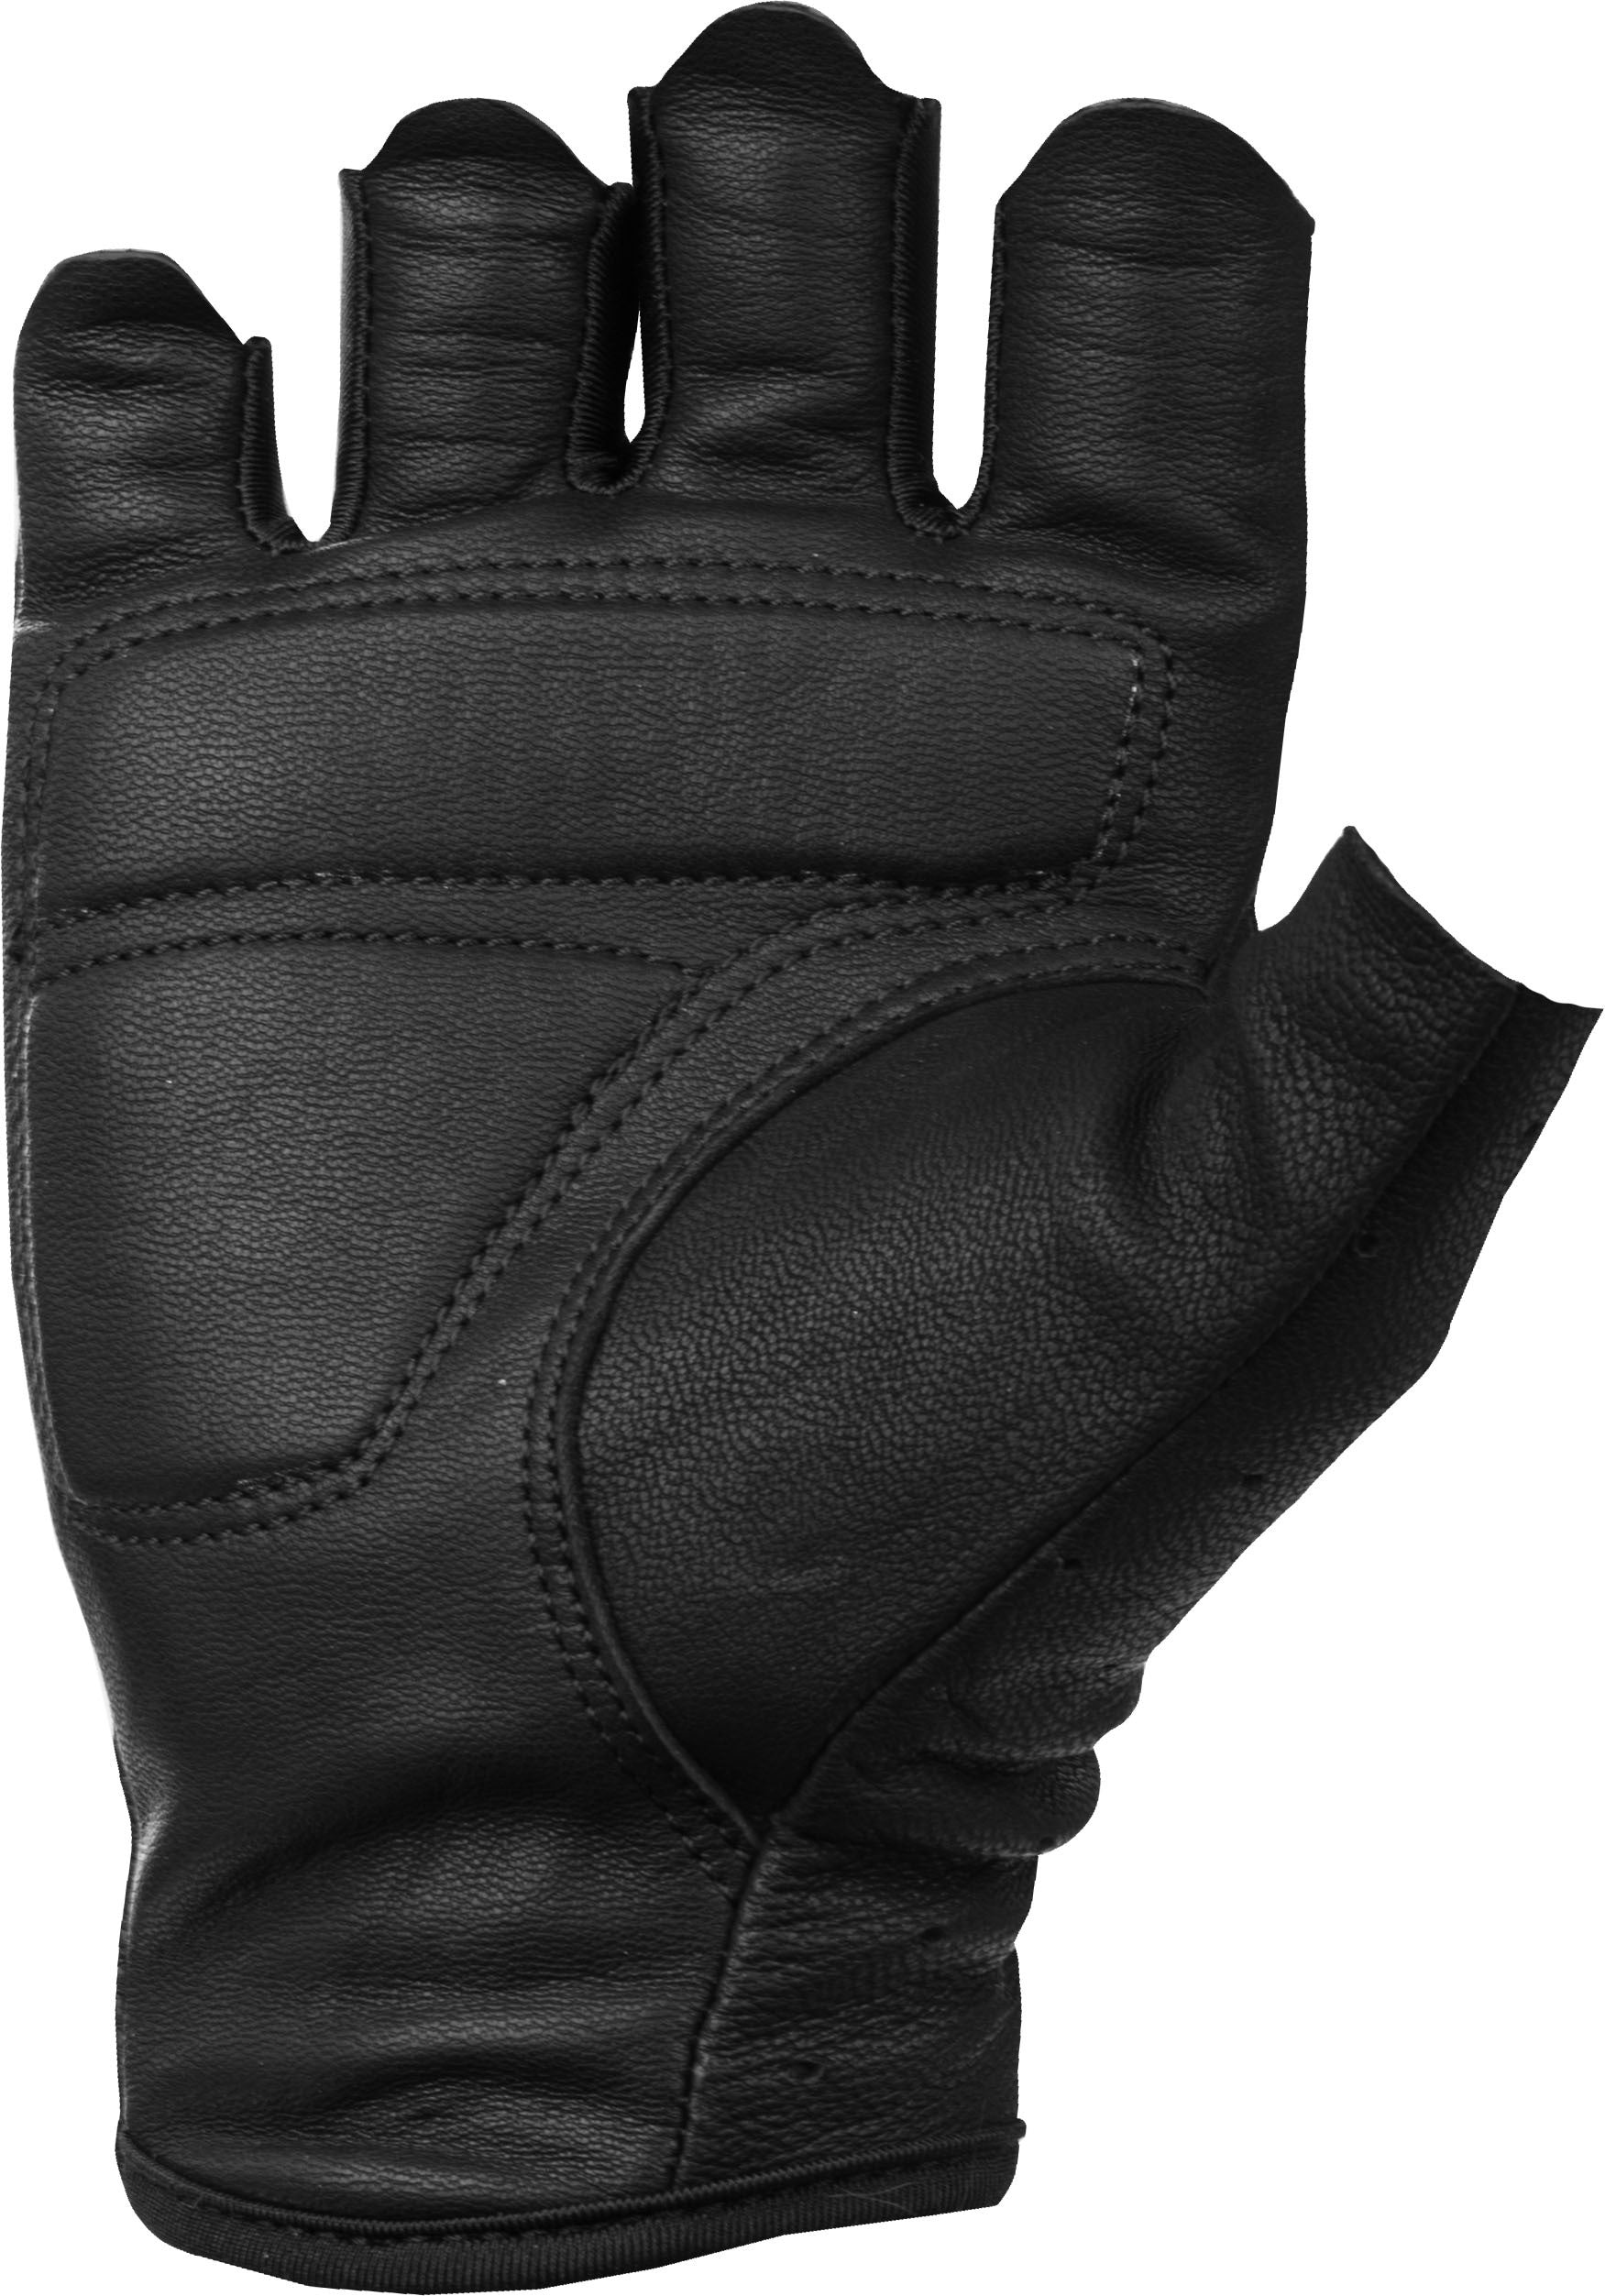 Women's Ranger Gloves Black 2x